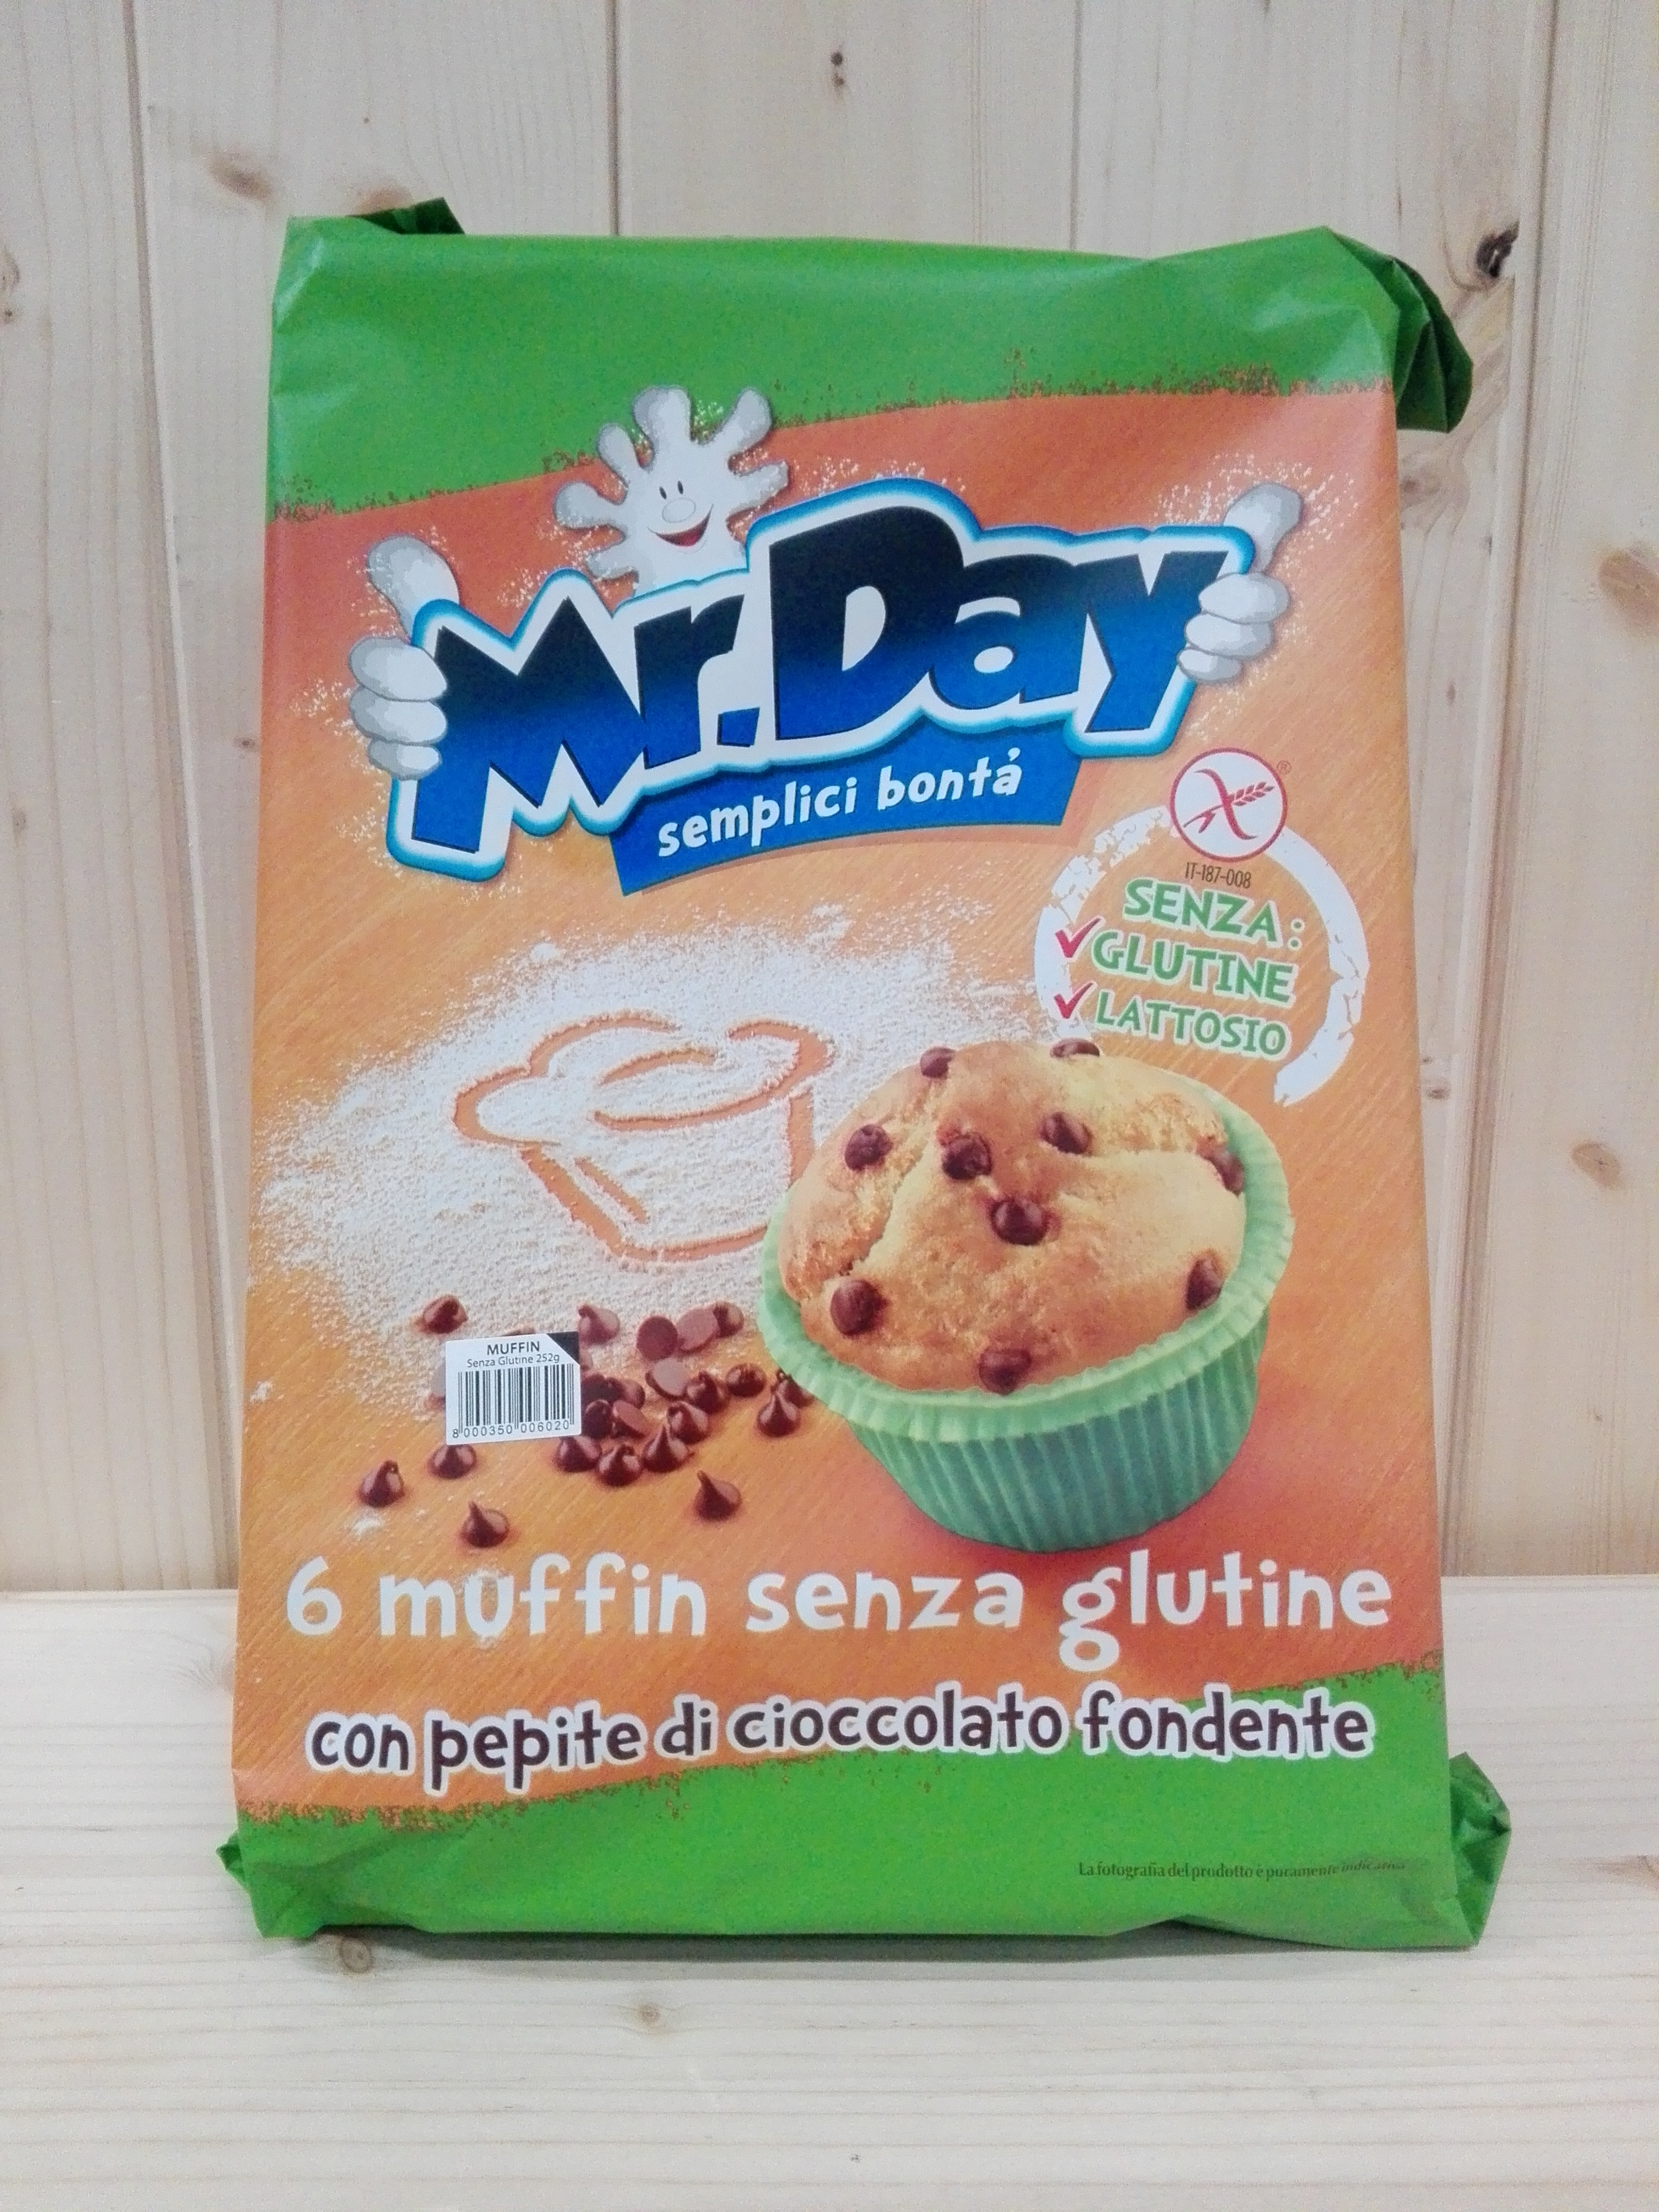 Mr. Day Muffin Con Gocce di Cioccolato, 252g  